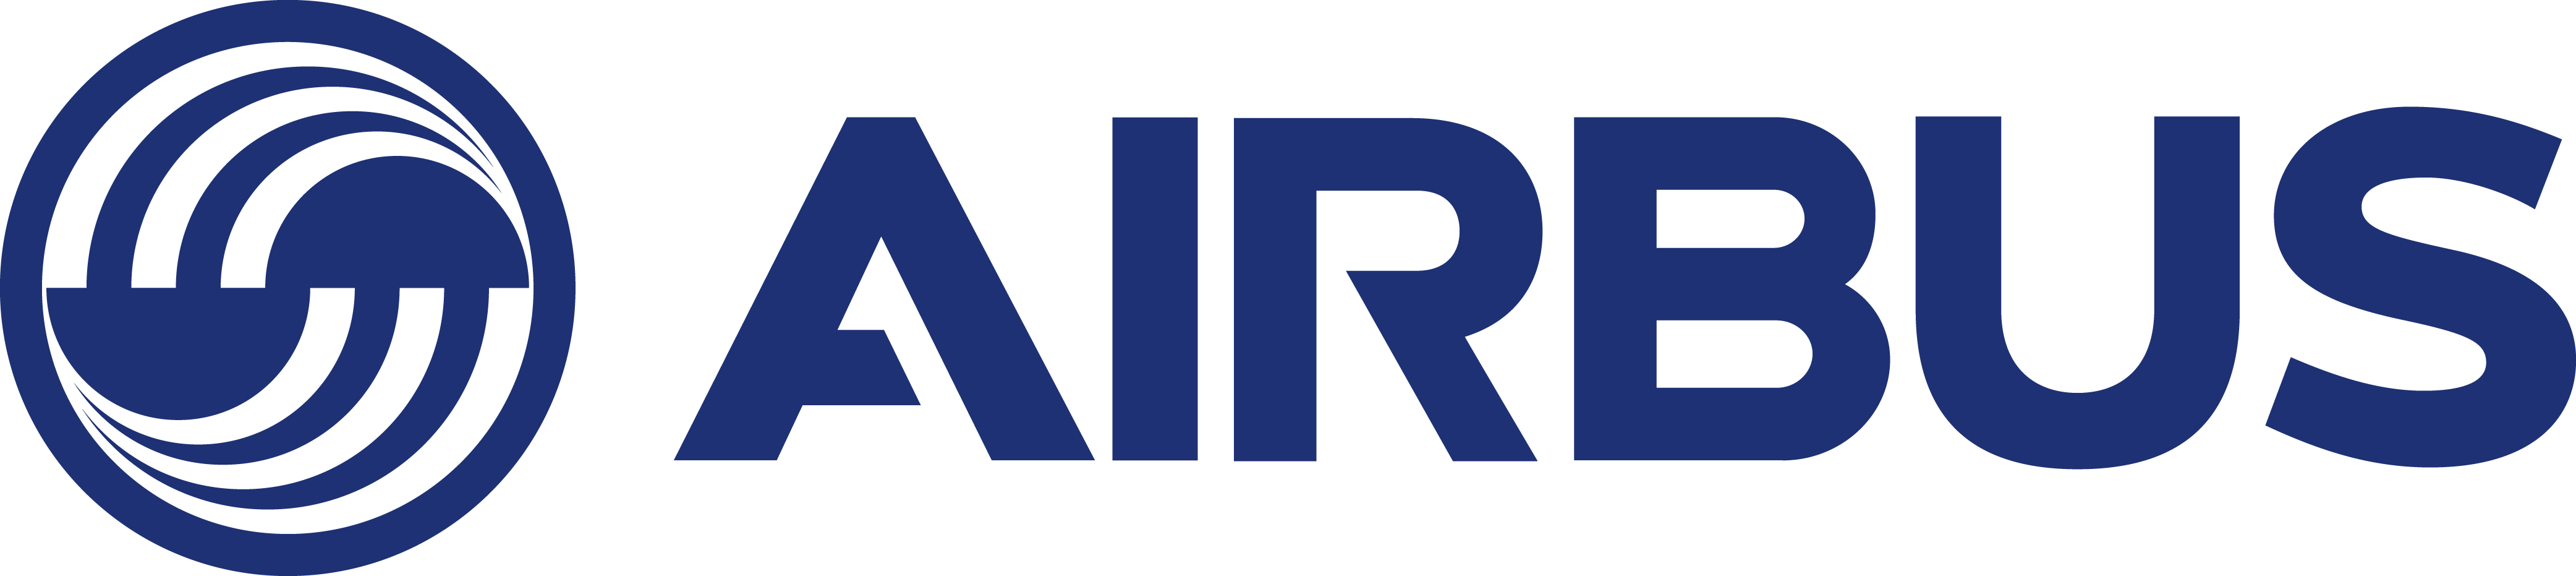 Airbus-logotyp